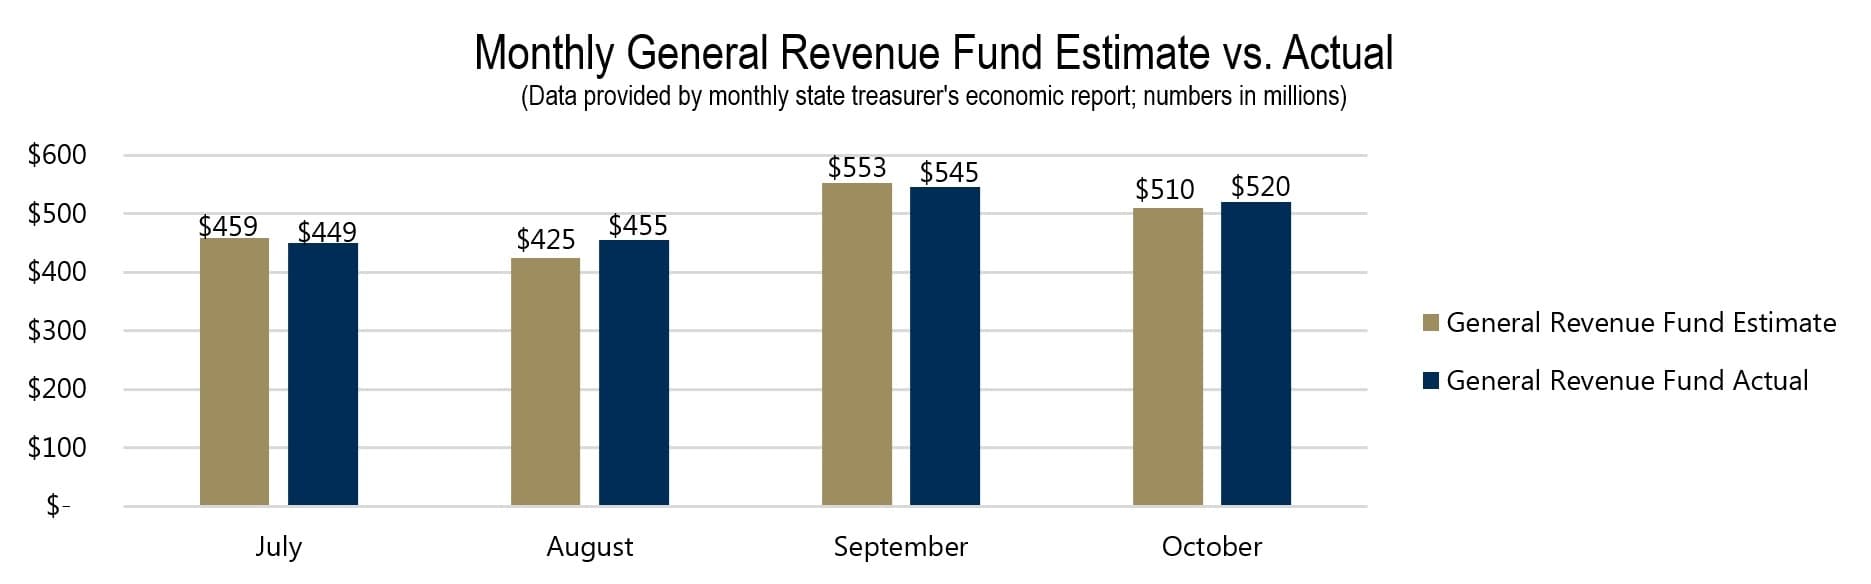 Monthly General Revenue Fund Estimate vs. Actual